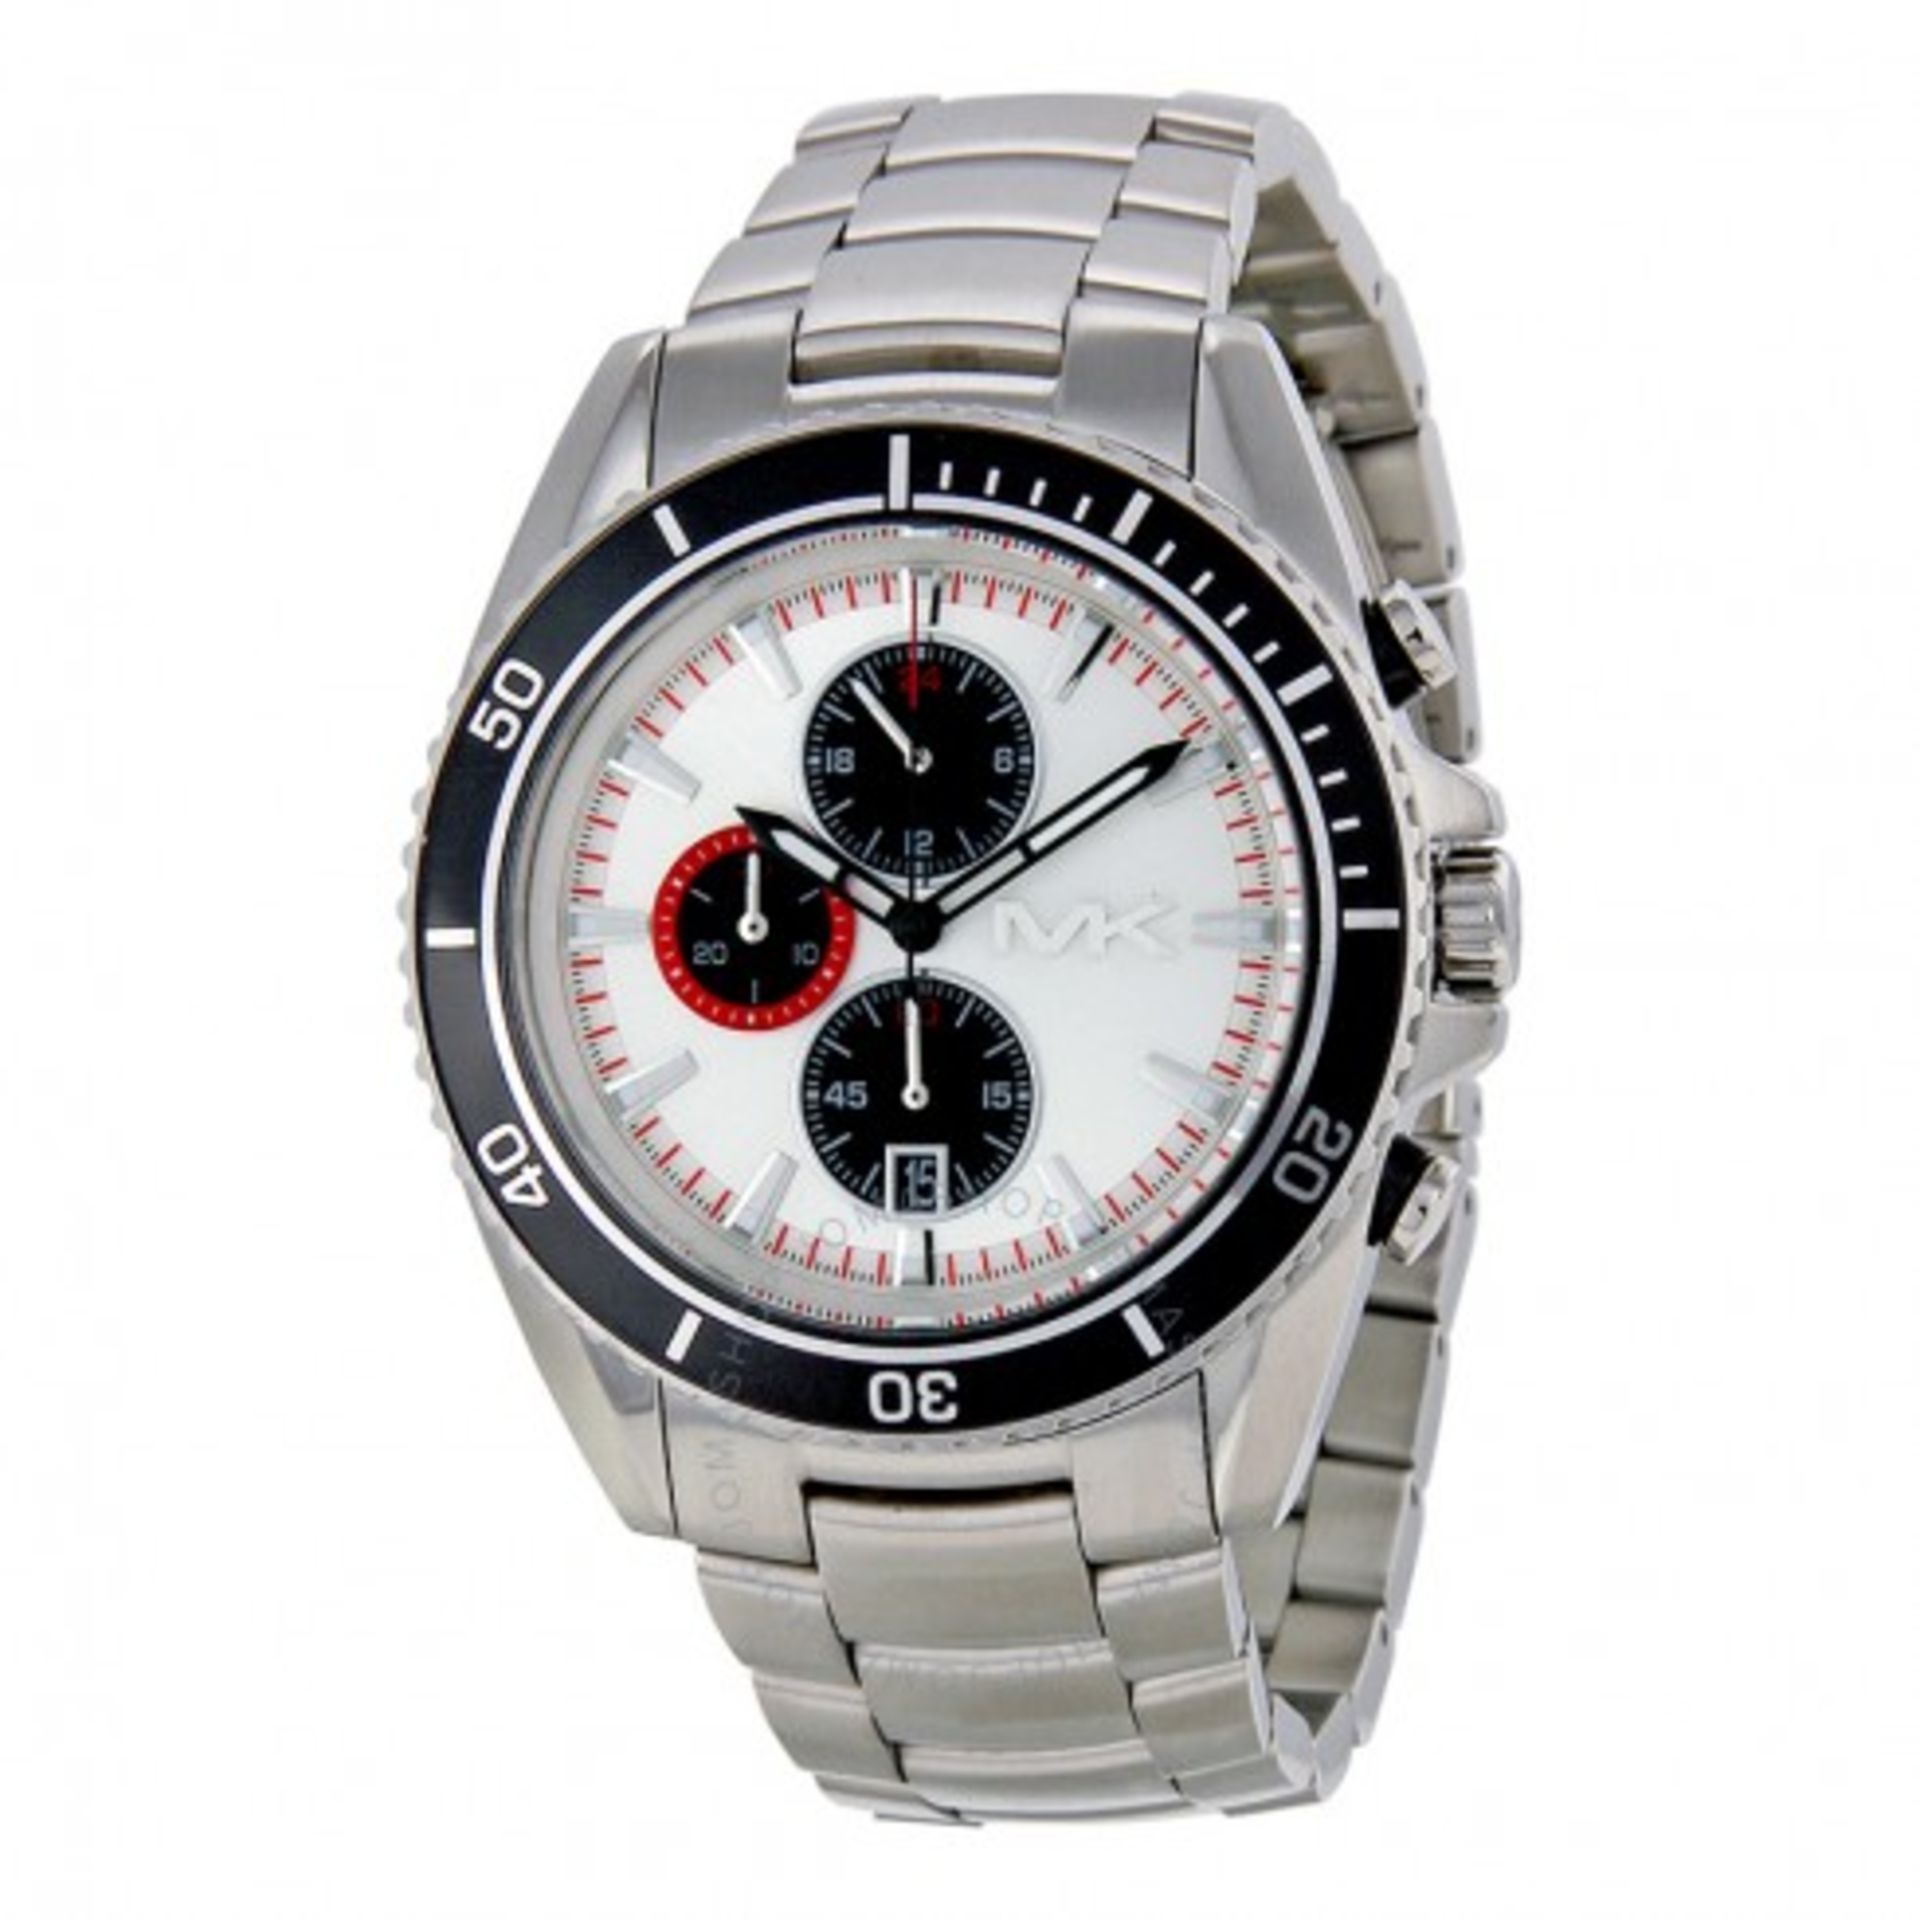 Michael Kors MK8339 Men's Watch